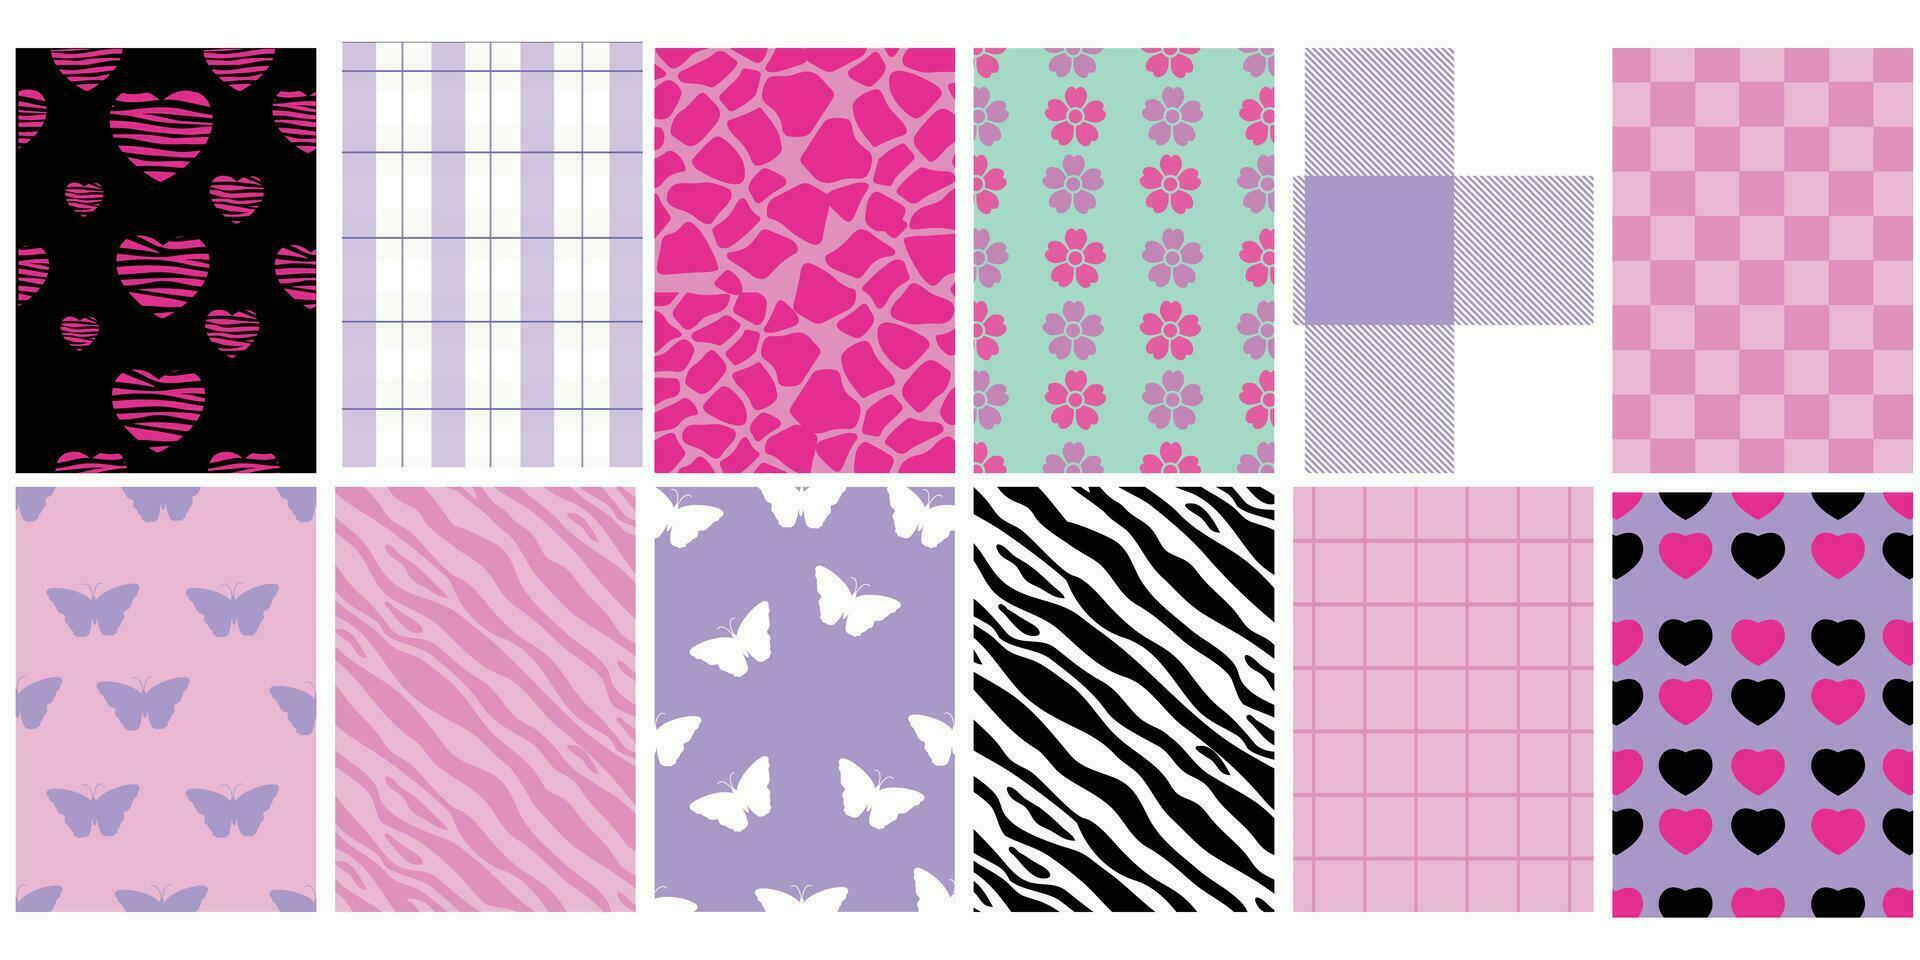 y2k glamour rosa sömlös mönster. bakgrunder i trendig emo goth 2000-talet stil. fjäril, hjärta, schackbräde, maska, leopard, zebra. 90-talet, 00-talet estetisk. rosa pastell färger. vektor